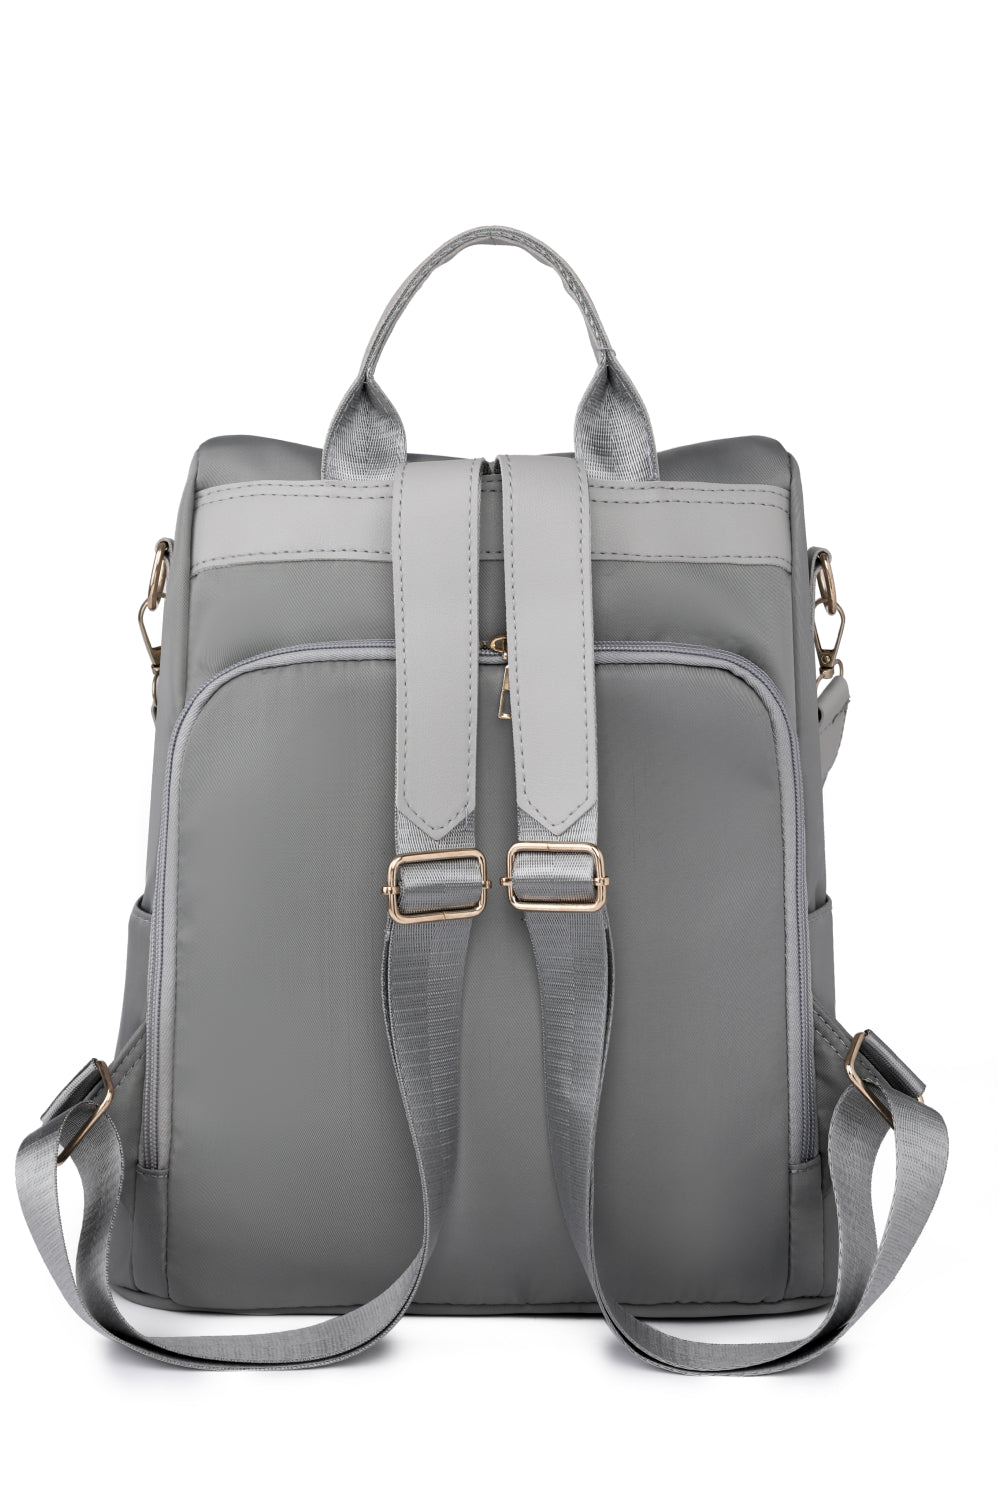 SoVersatile Zipper Pocket Beaded Backpack